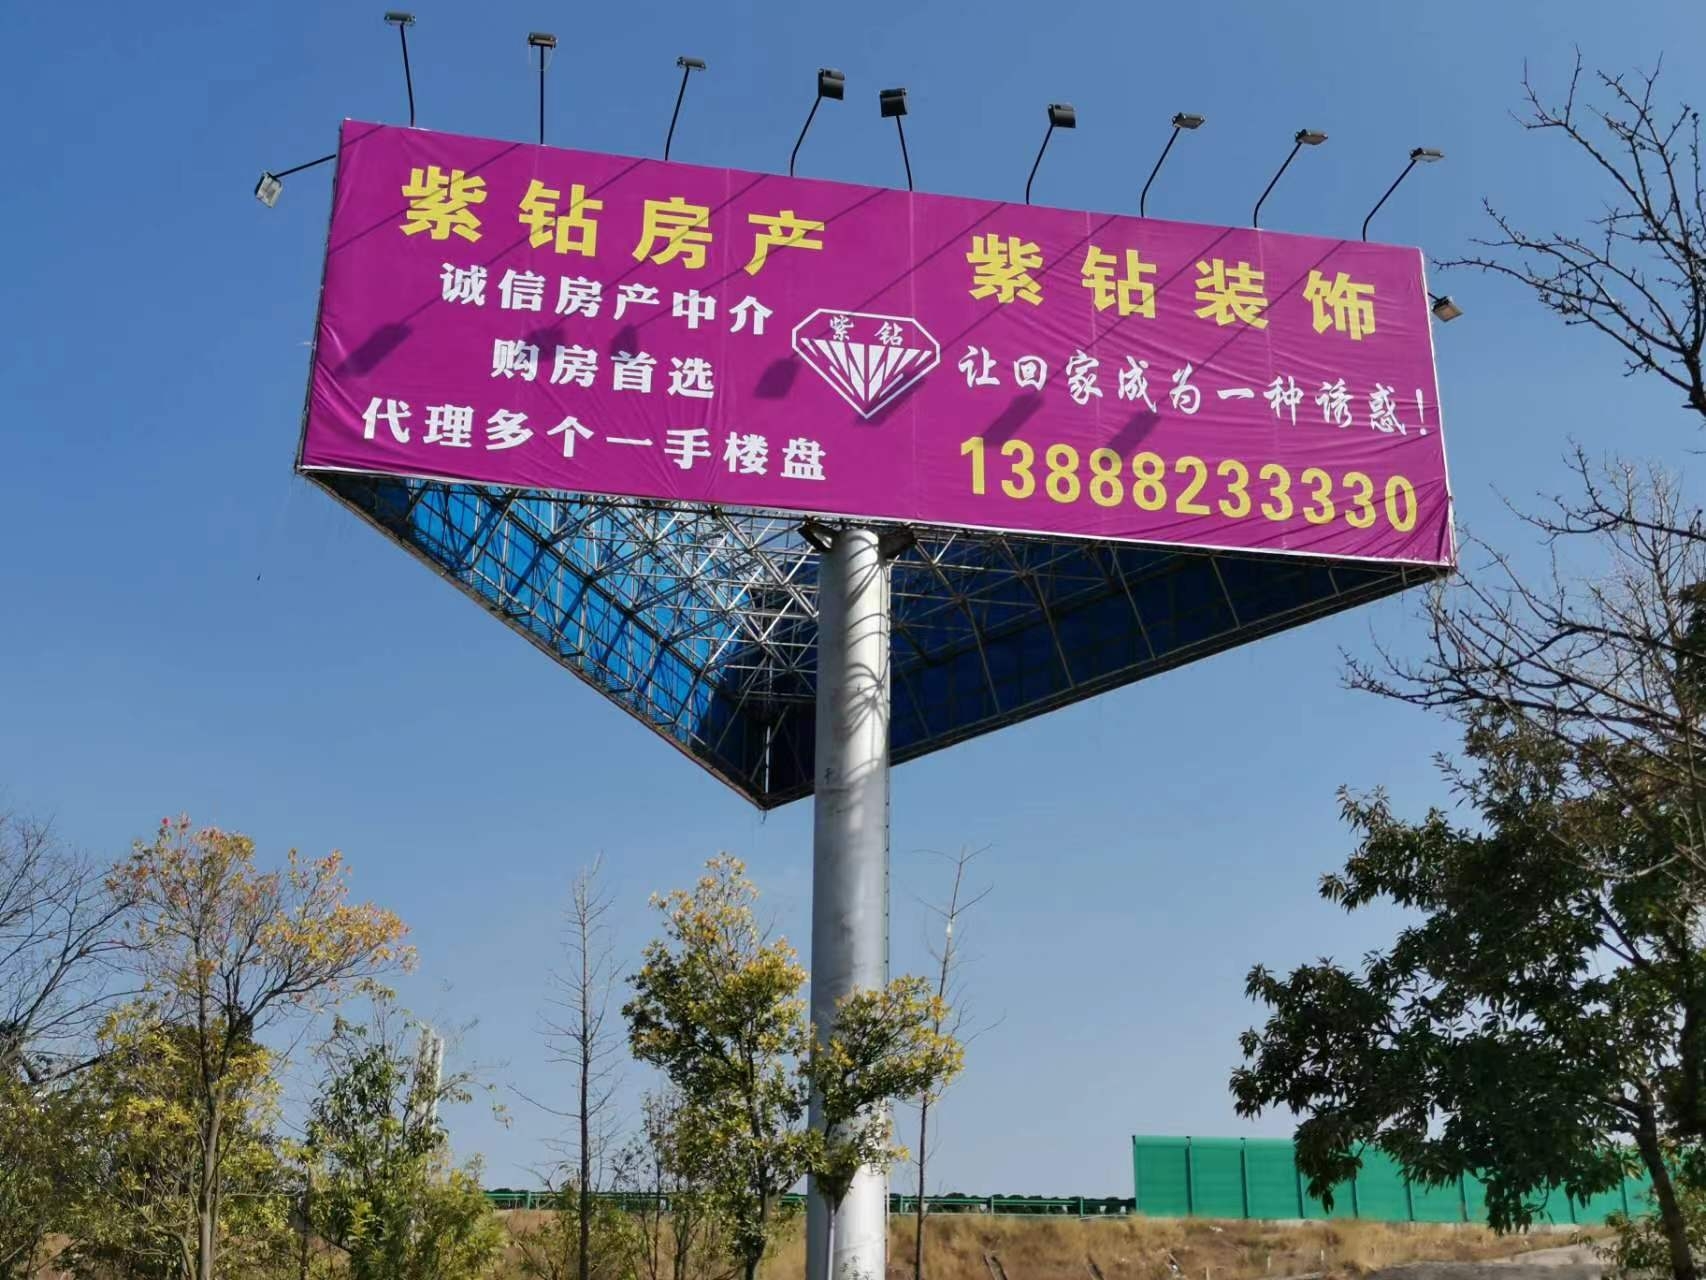 云南紫钻装饰工程有限公司